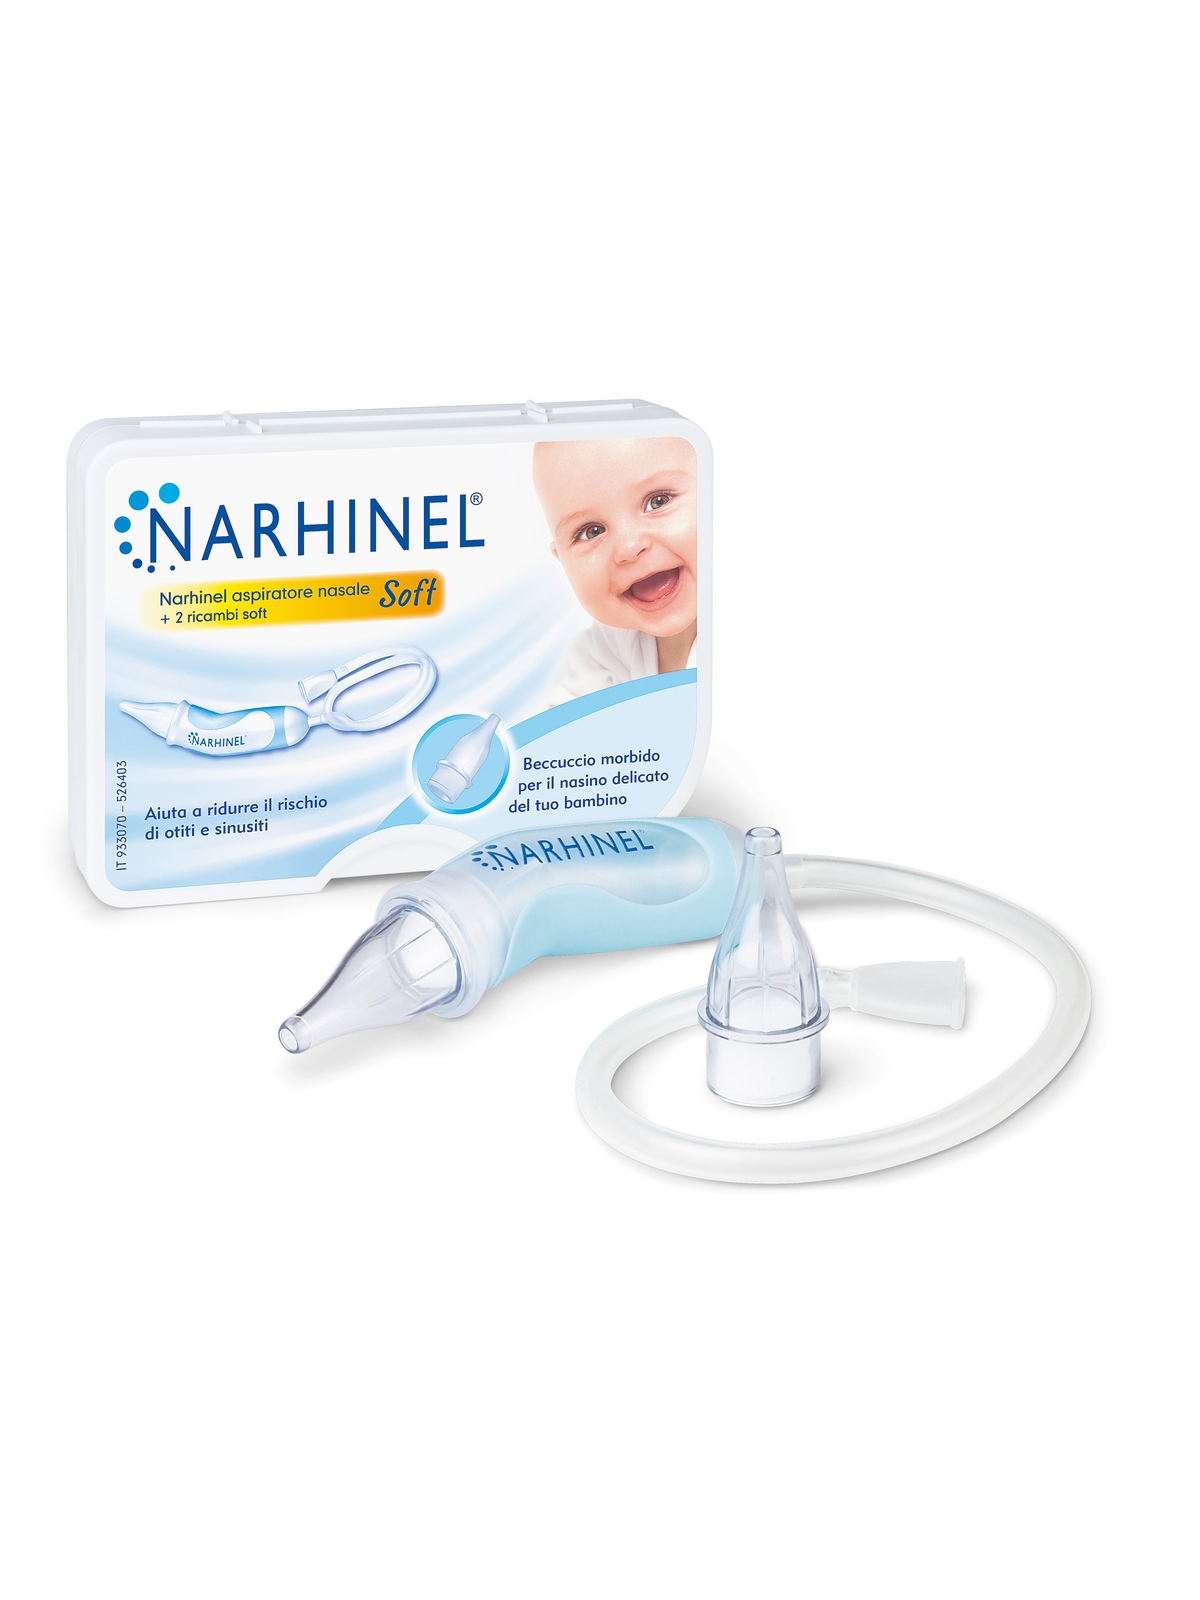 Narhinel aspiratore nasale soft per neonati e bambini, aiuta a liberare il nasino, rimuovendo delicatamente le secrezioni nasali, con 2 ricambi soft - NARHINEL